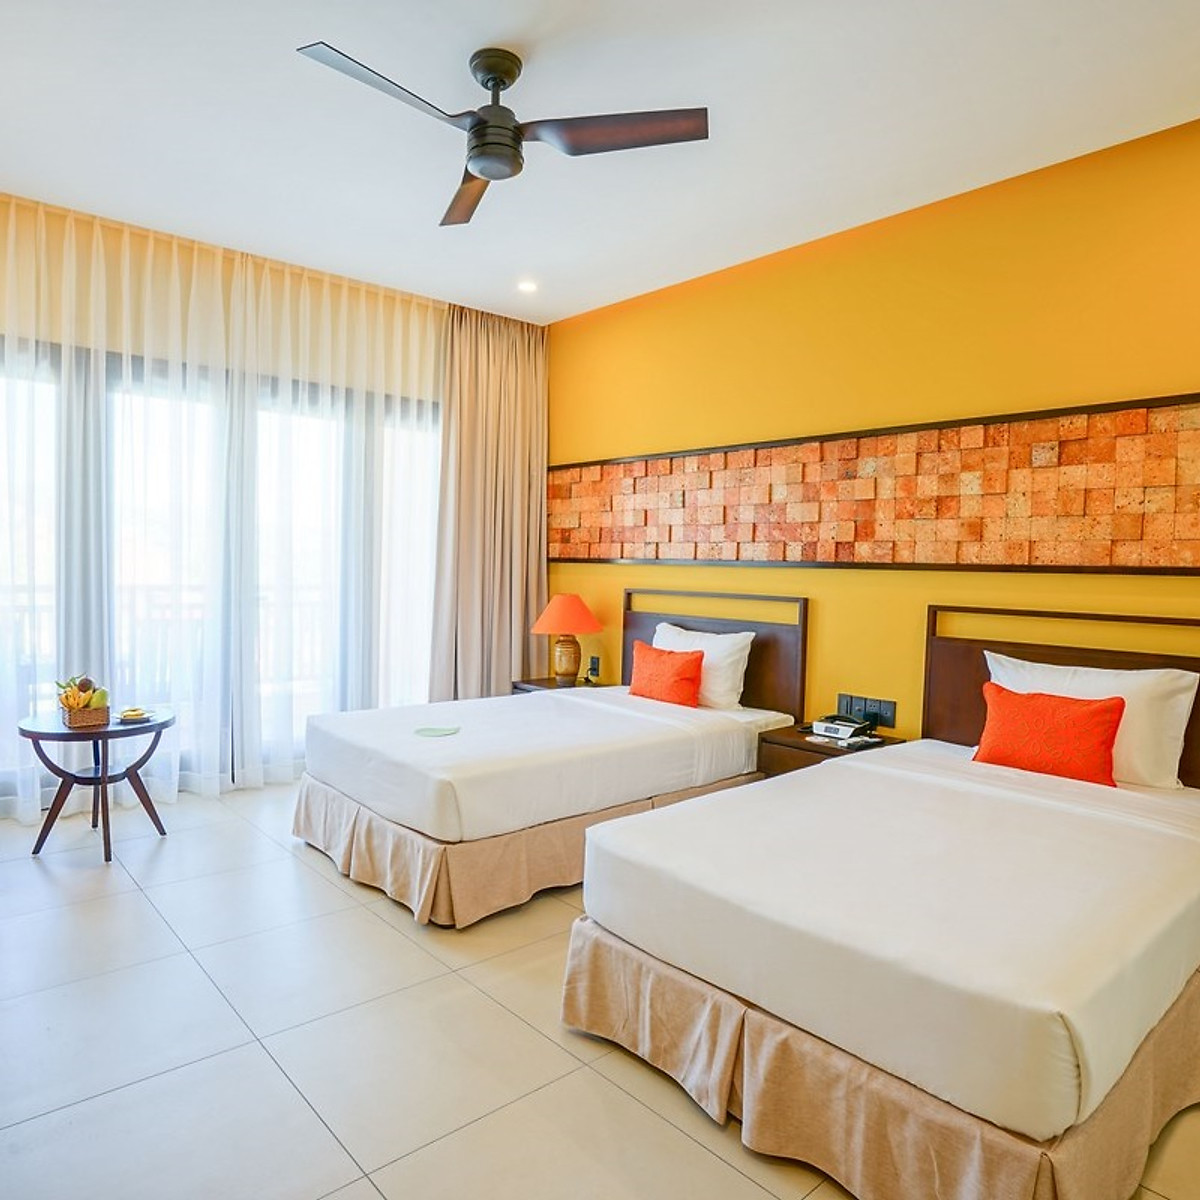 Hình ảnh Pandanus Resort 4* Phan Thiết - Buffet Sáng, Hồ Bơi, Bãi Biển Riêng, Voucher Giá Tốt, Khách Sạn Mũi Né, Và Nhiều Ưu Đãi Hấp Dẫn